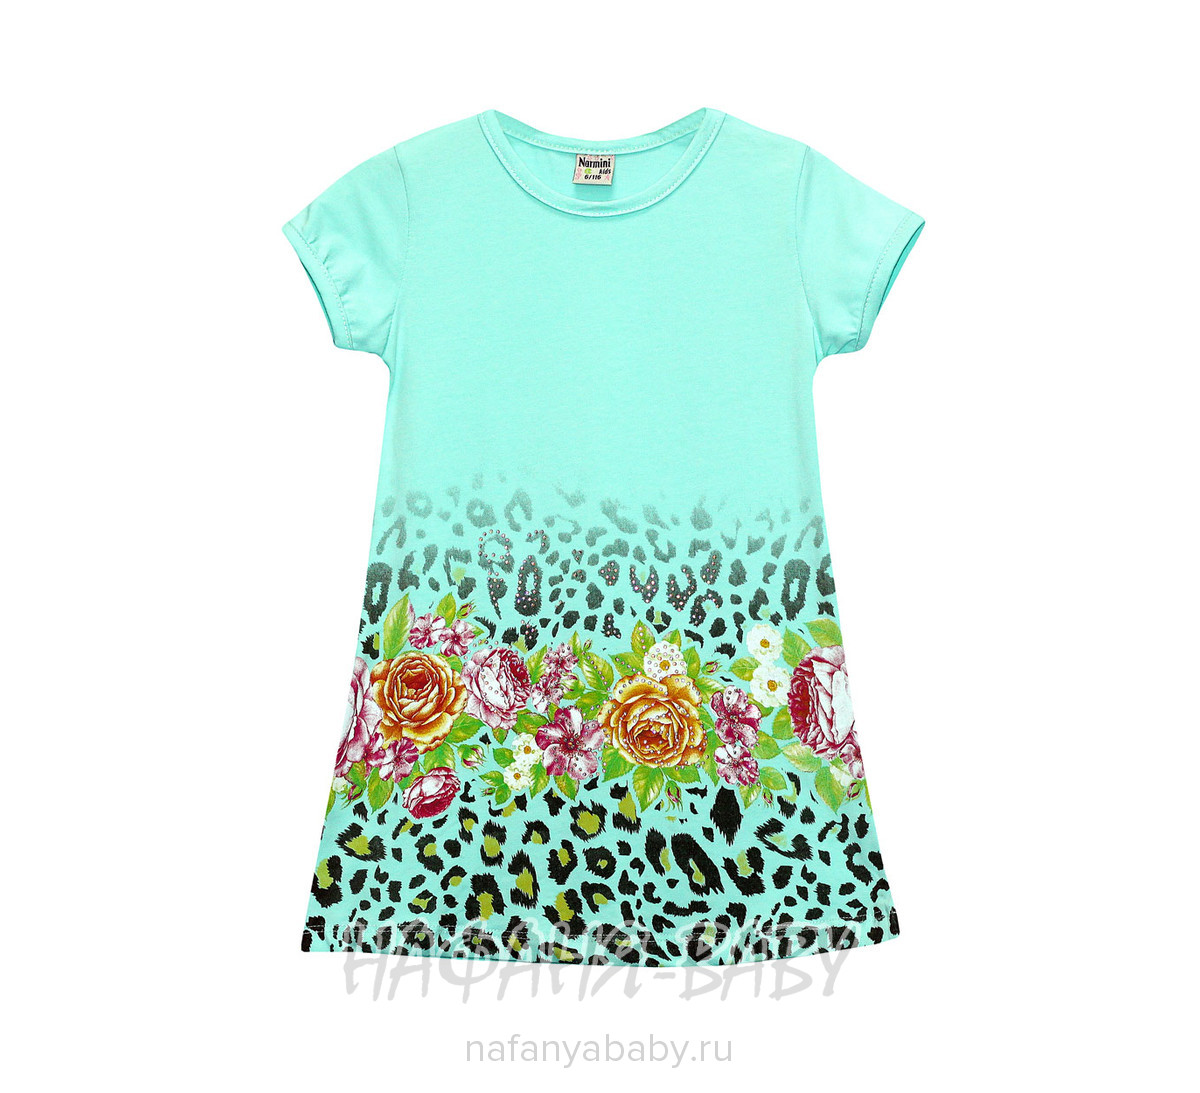 Детское платье NARMINI арт: 5517, 1-4 года, 5-9 лет, цвет персиковый, оптом Турция